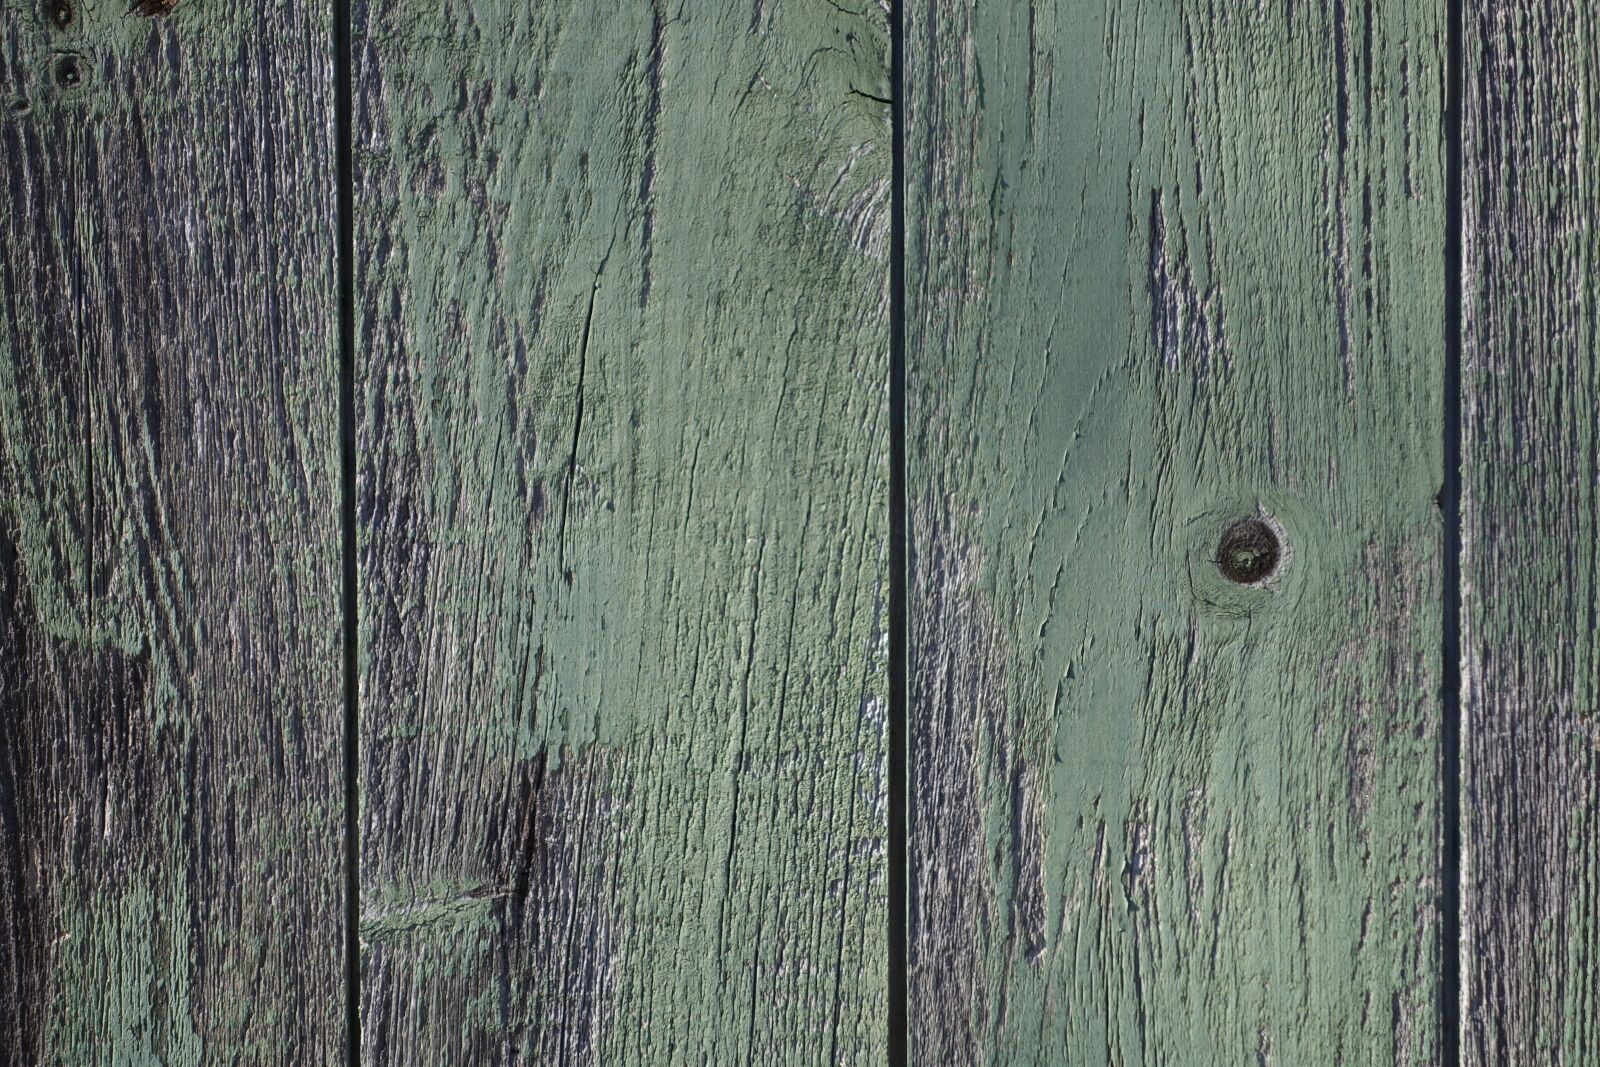 Sony Cyber-shot DSC-RX100 II sample photo. Wood, door, texture photography